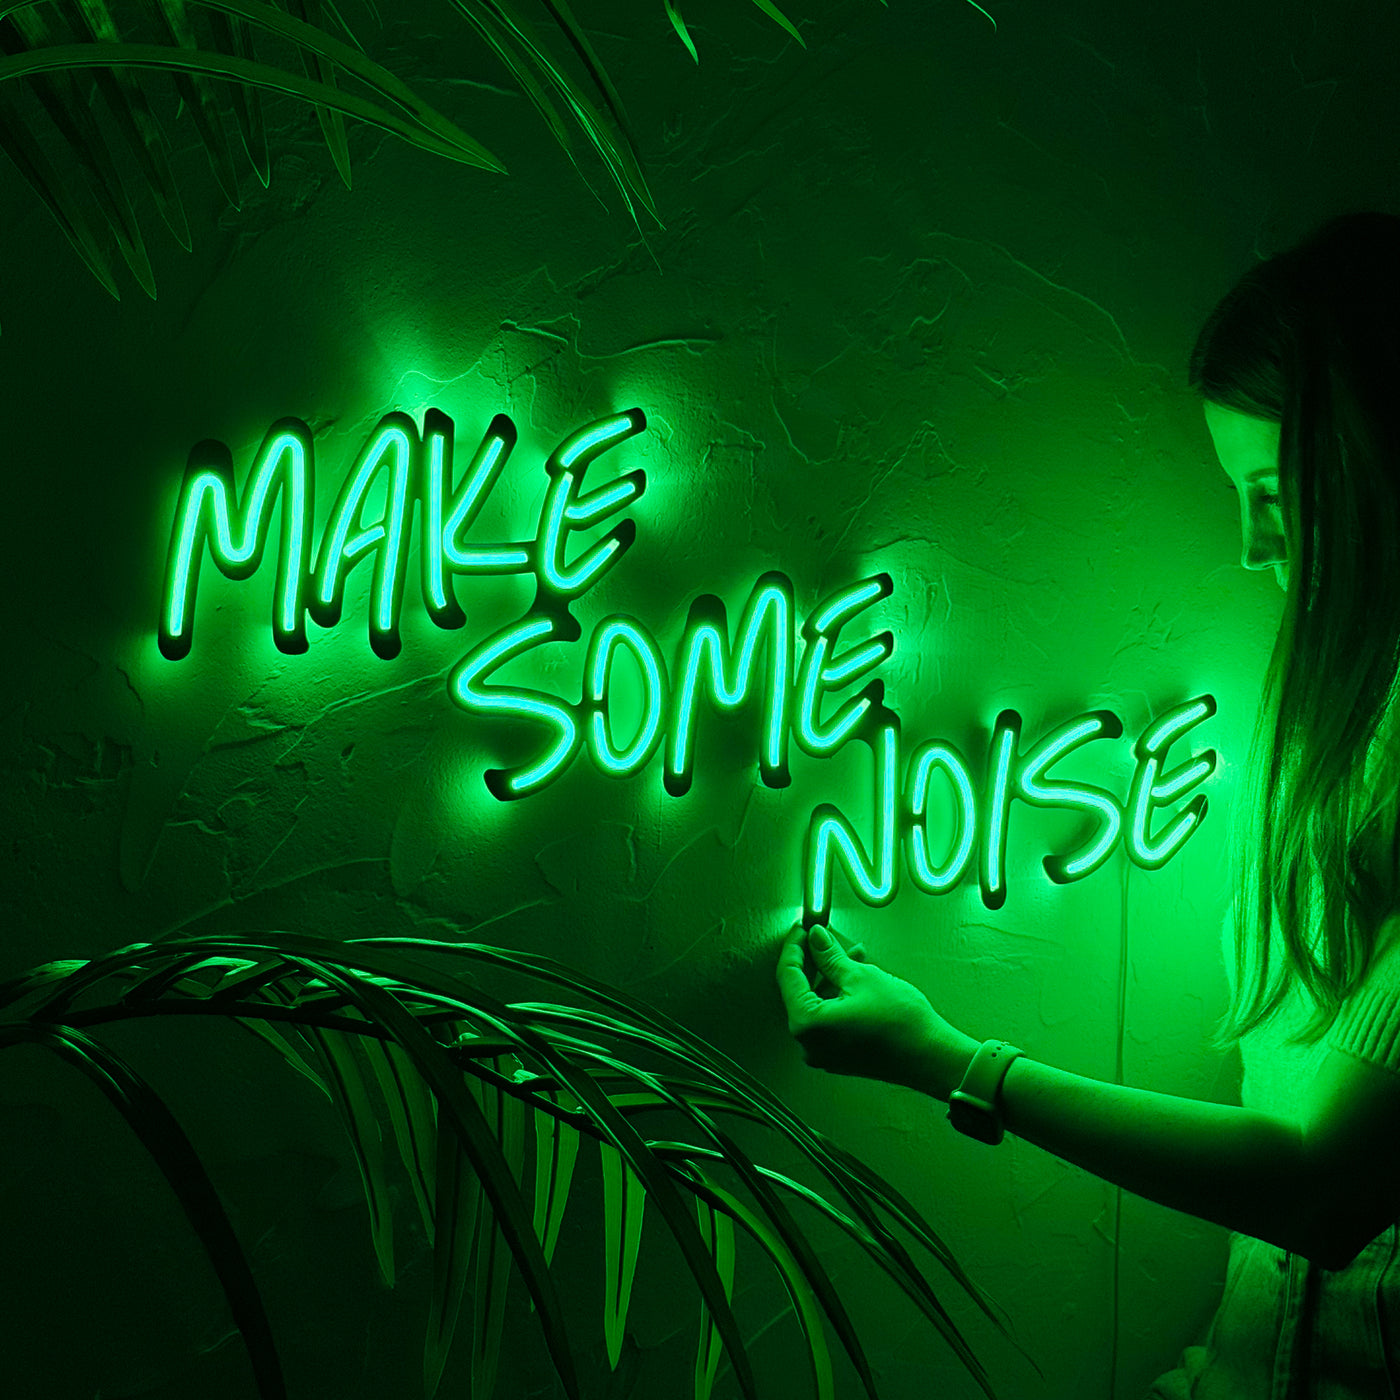 Faire du bruit Art mural néon